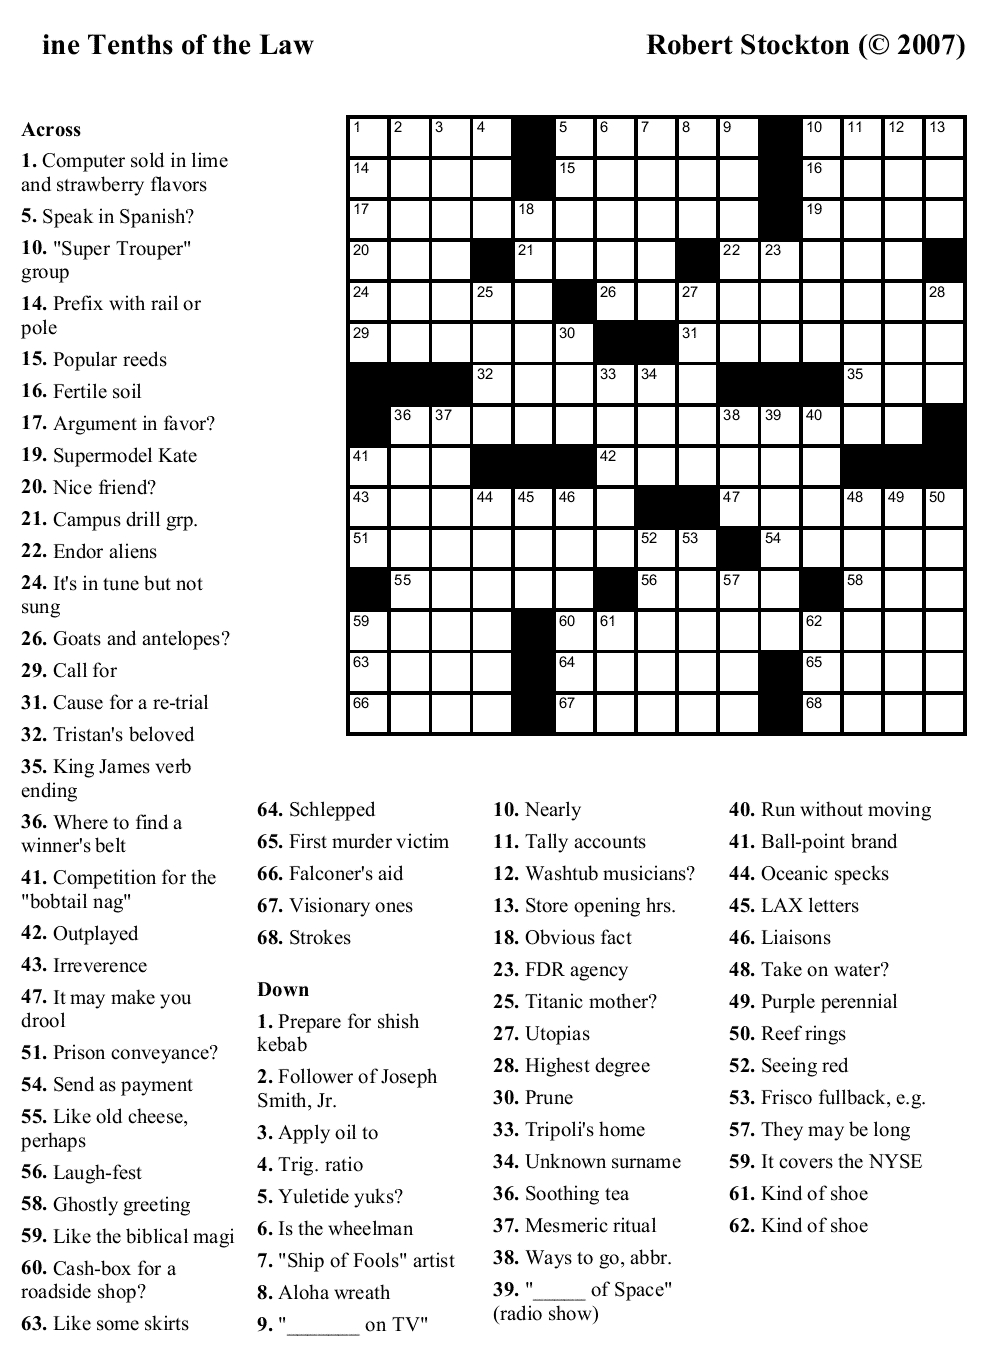 Easy Printable Crossword Puzzels - Infocap Ltd. - Free Online Printable Crossword Puzzles